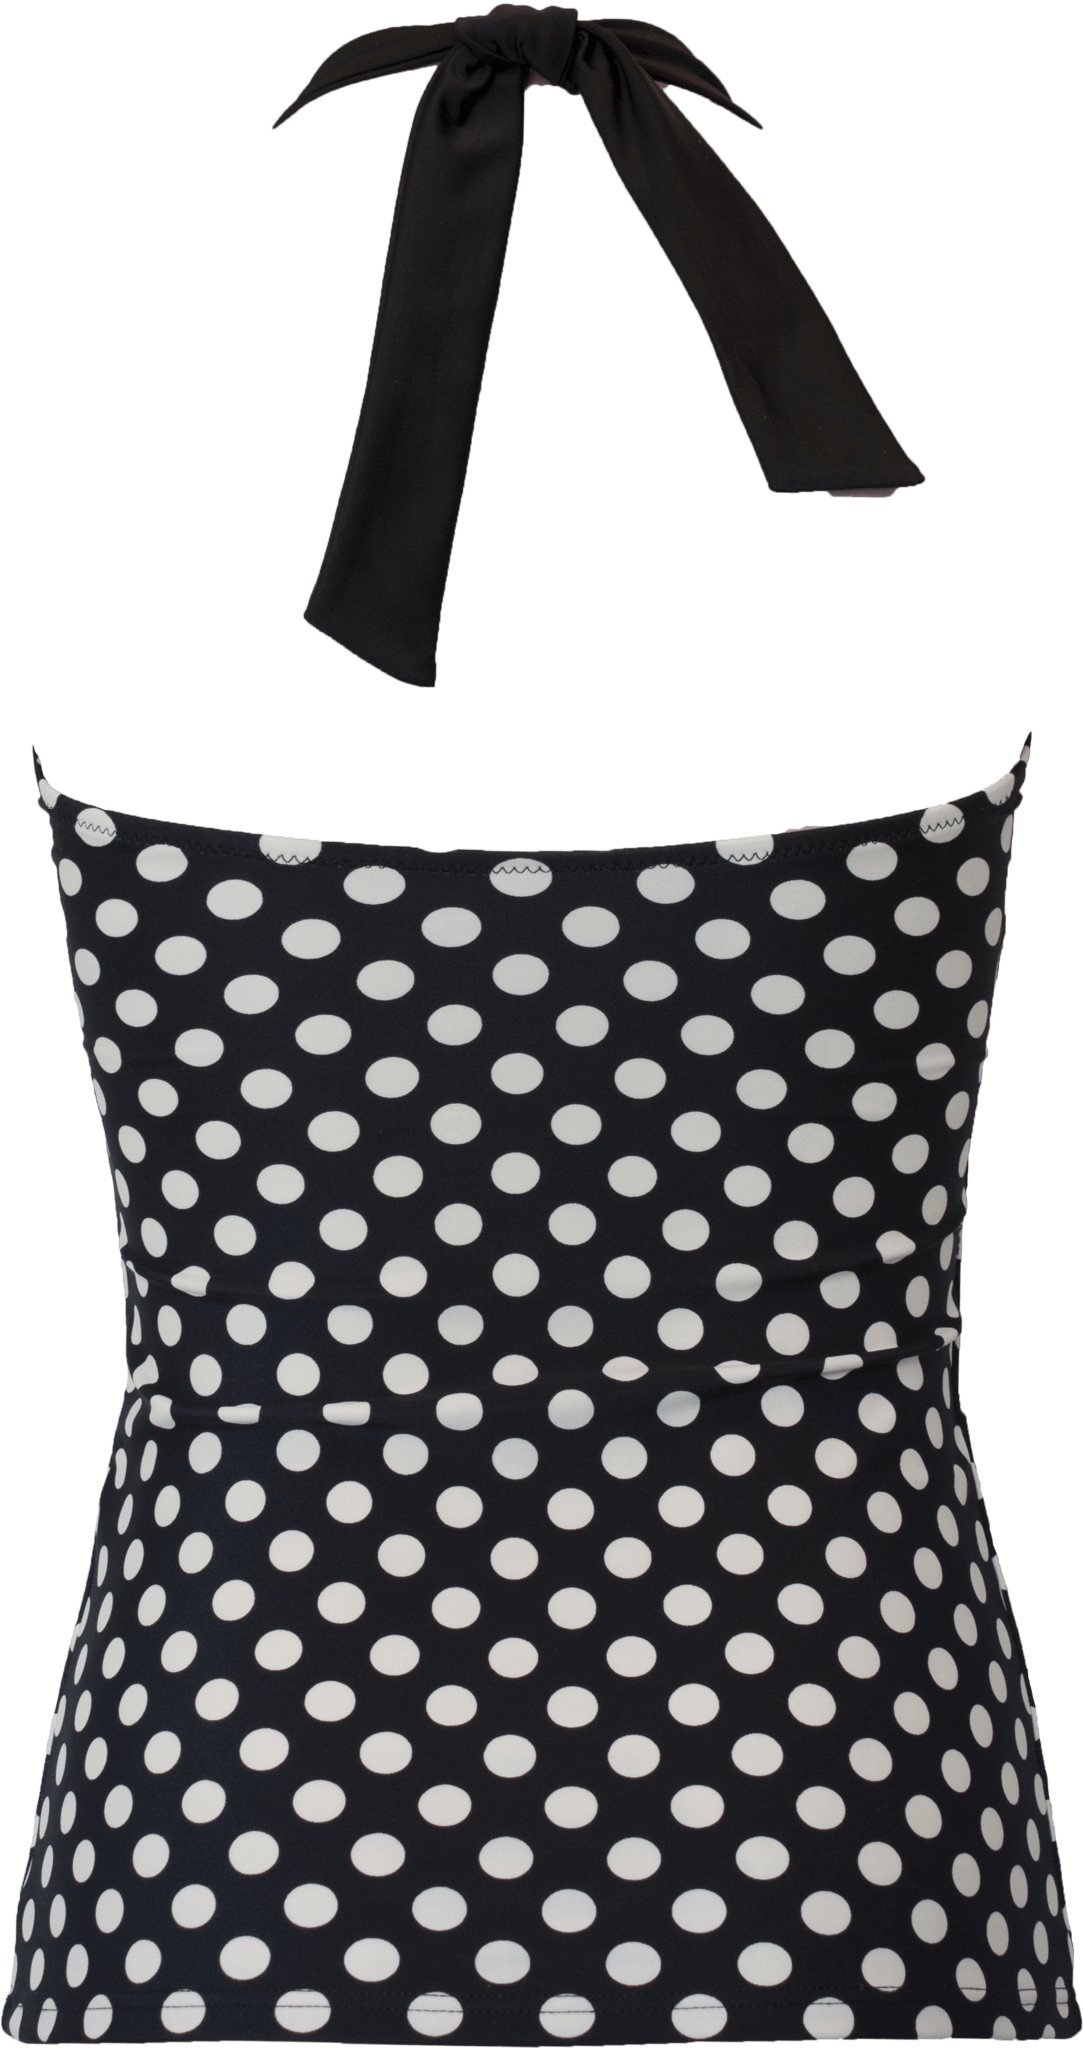 Ruched Square Halter - Black Cream Retro Dots - FINAL SALE - DM Fashion